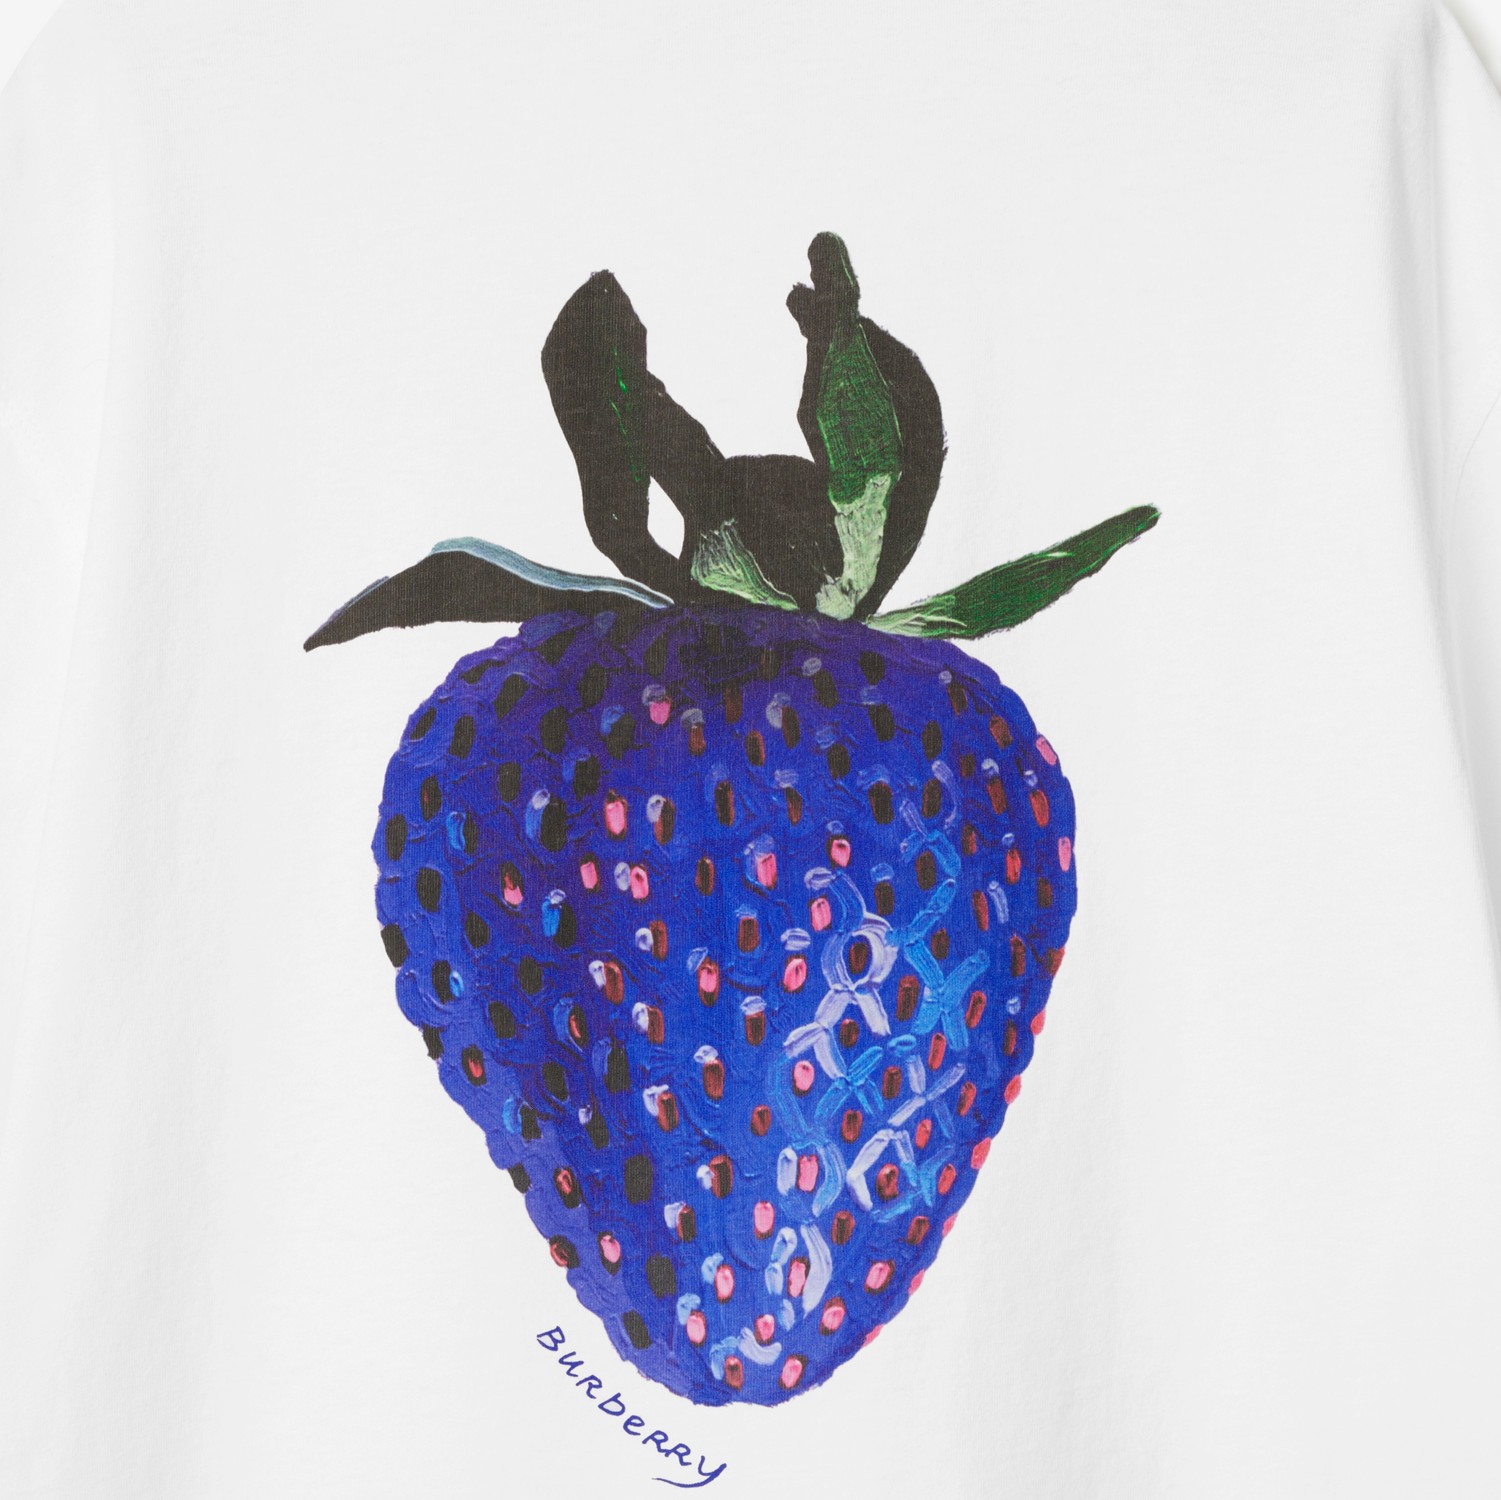 Baumwoll-T-Shirt mit Erdbeermotiv